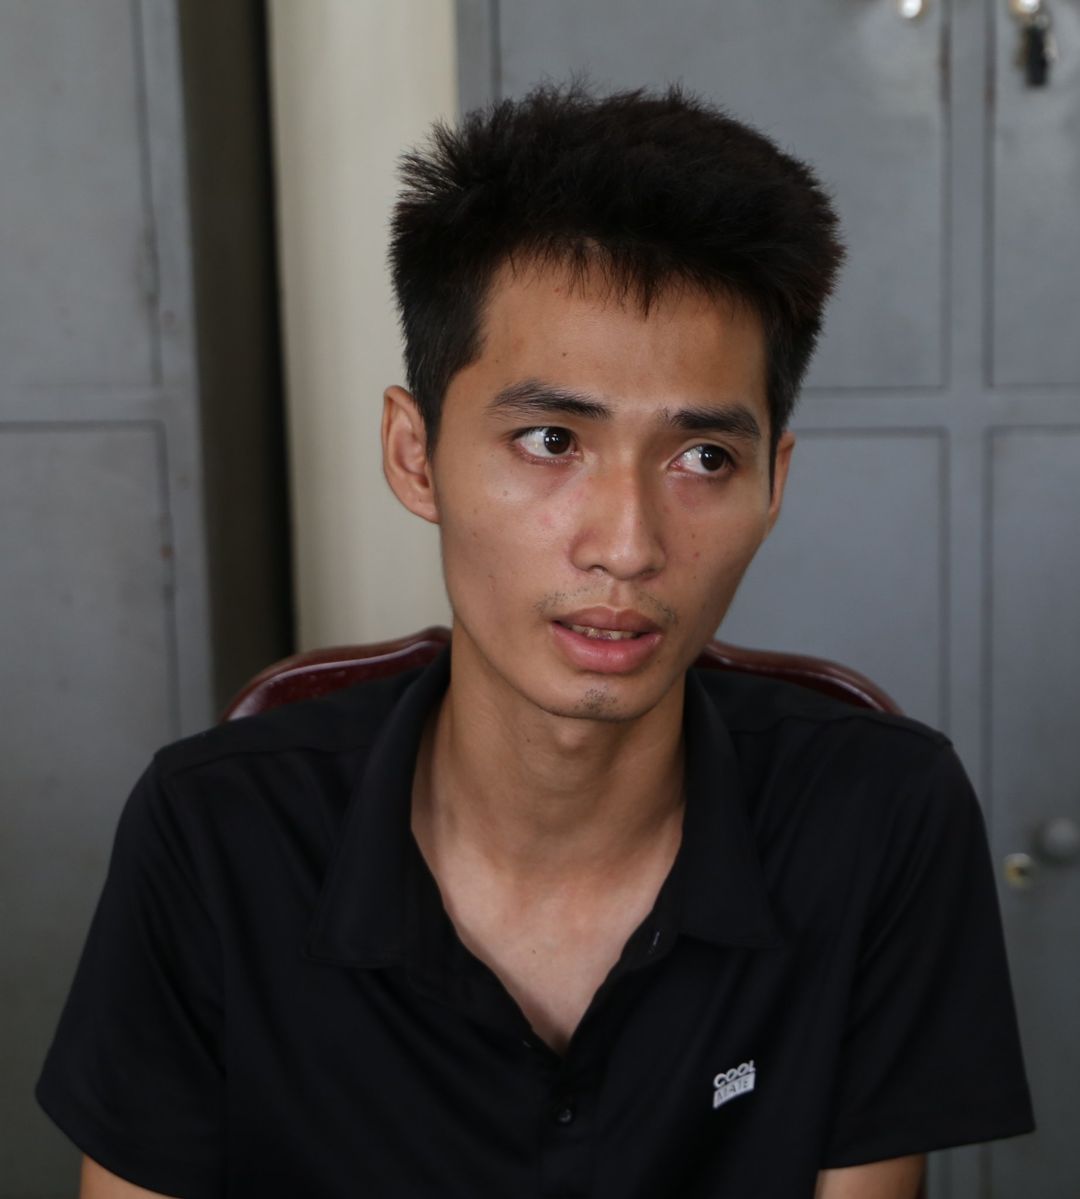 Hội bảo vệ quyền trẻ em Việt Nam sẵn sàng cử luật sư trợ giúp bé trai 3 tuổi bị giấu vào tủ cấp đông - Ảnh 3.